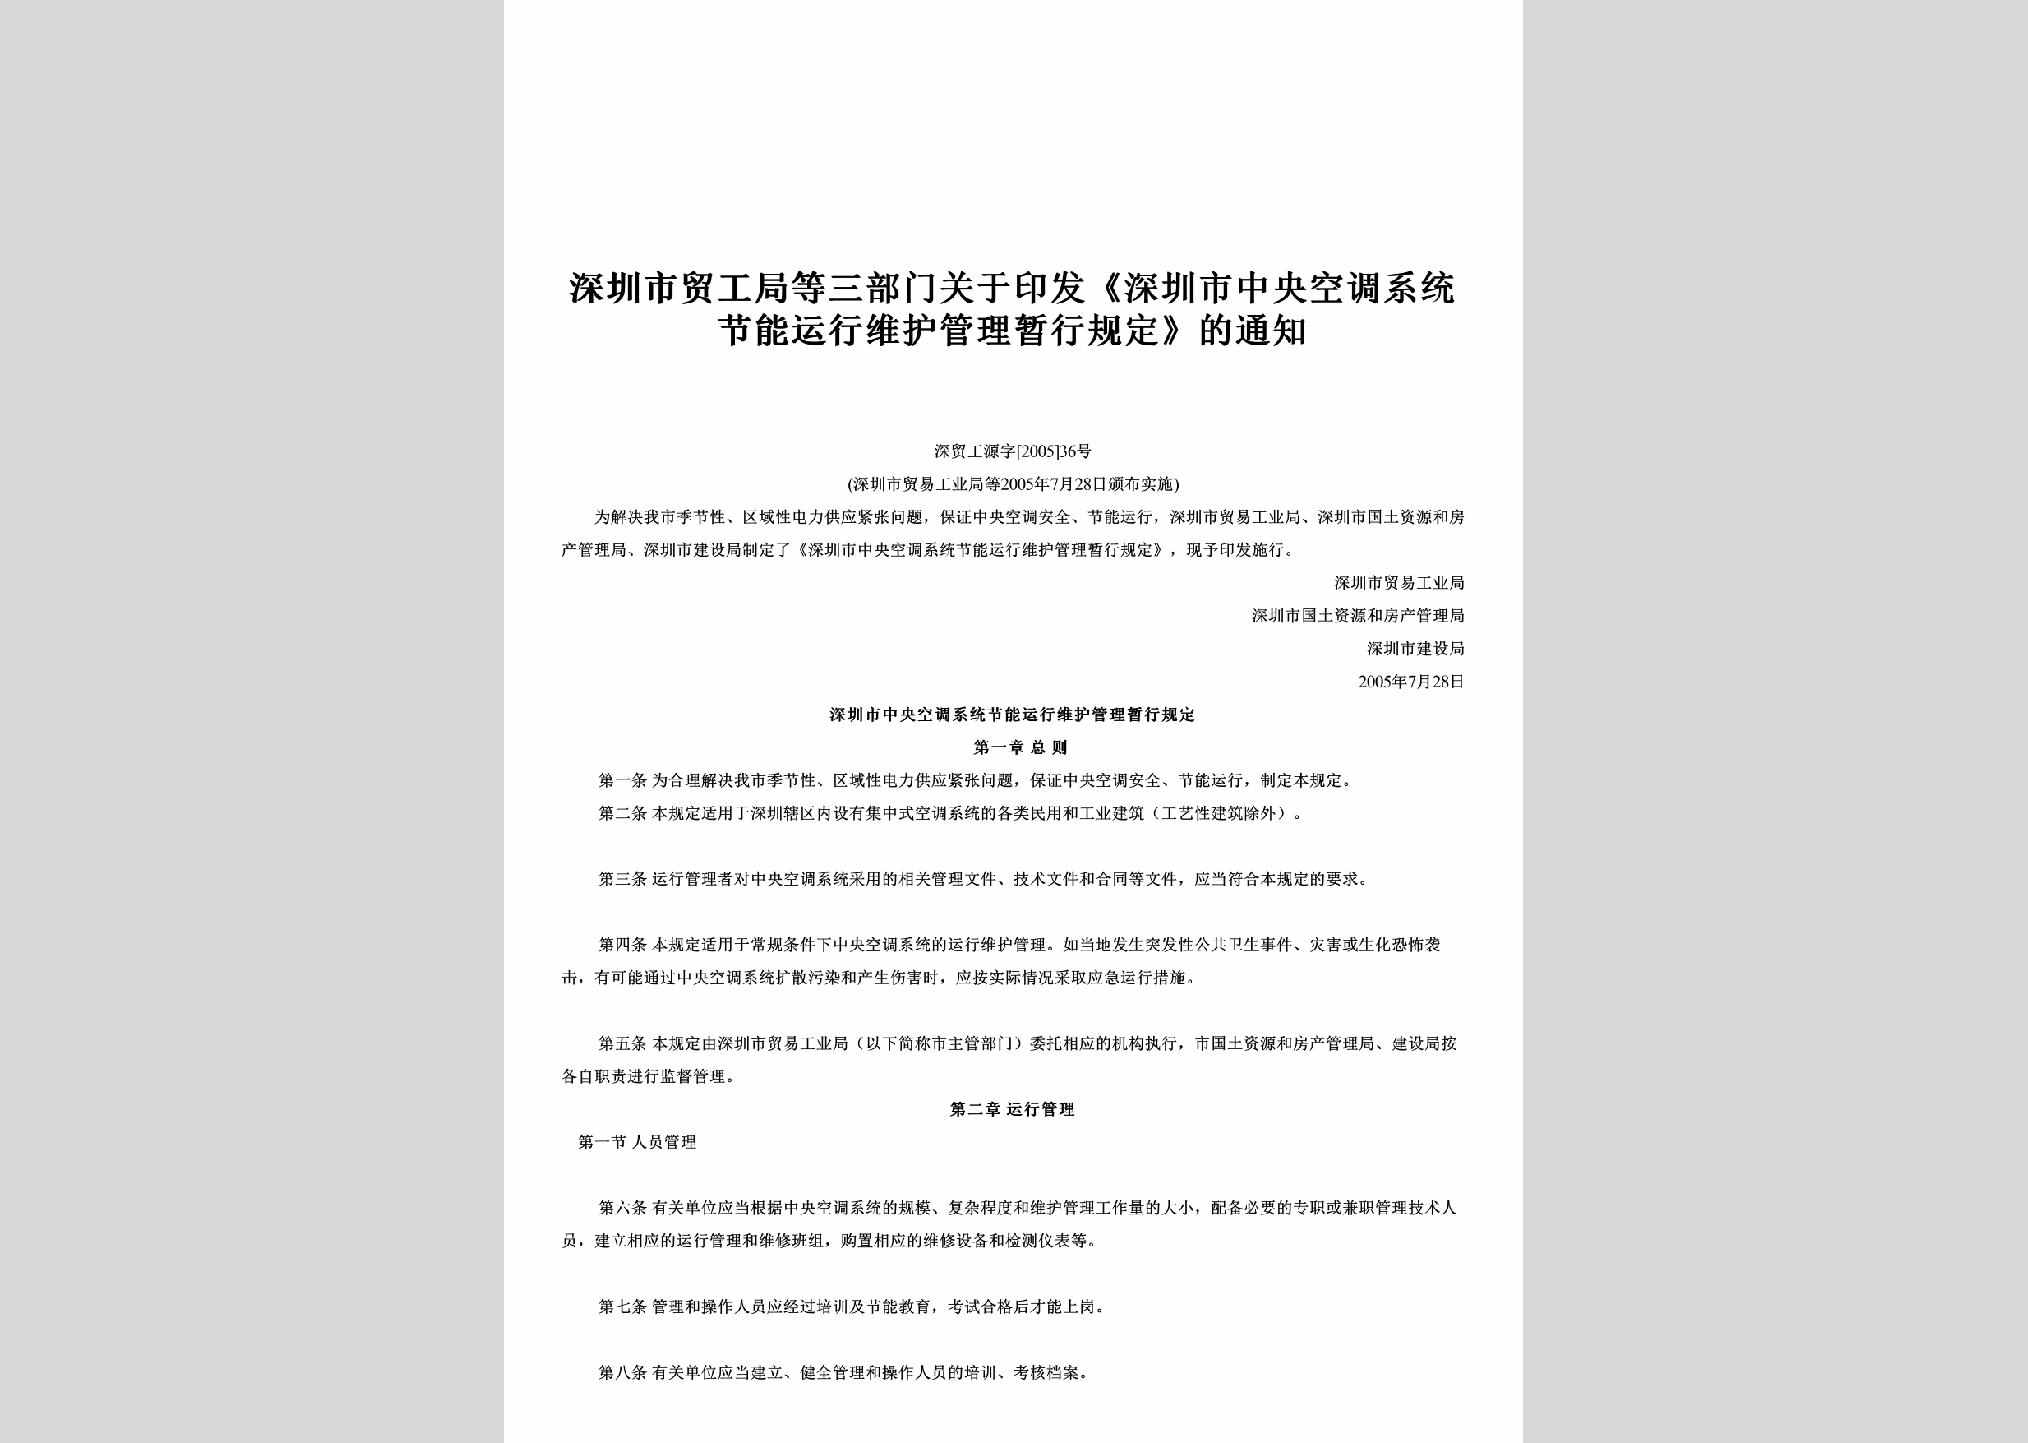 深贸工源字[2005]36号：关于印发《深圳市中央空调系统节能运行维护管理暂行规定》的通知